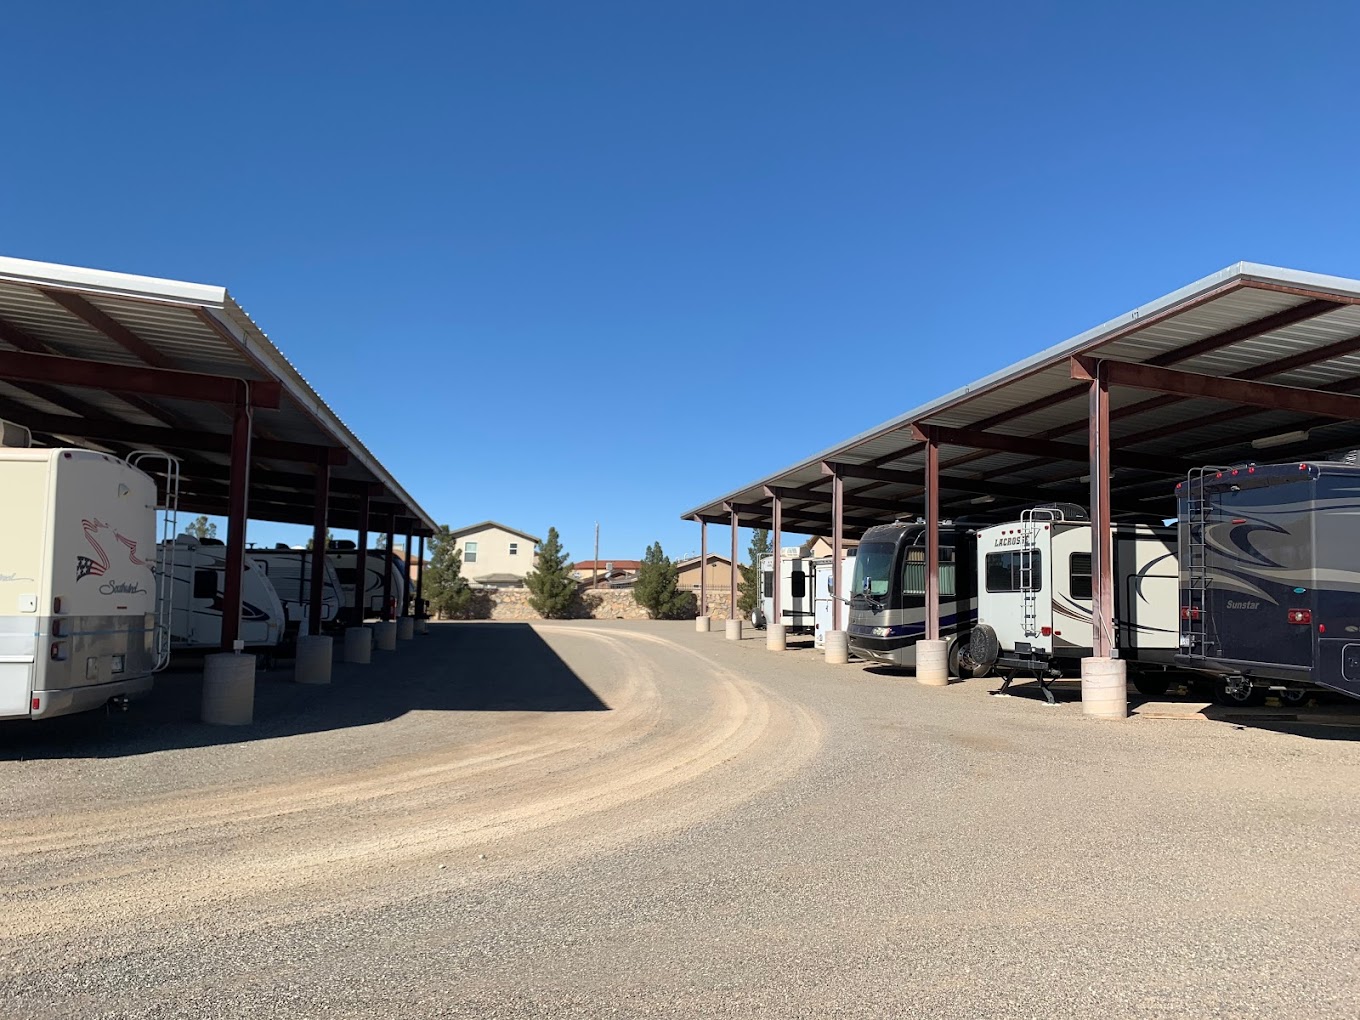 RV, Car & Vehicle Parking in El Paso, TX 